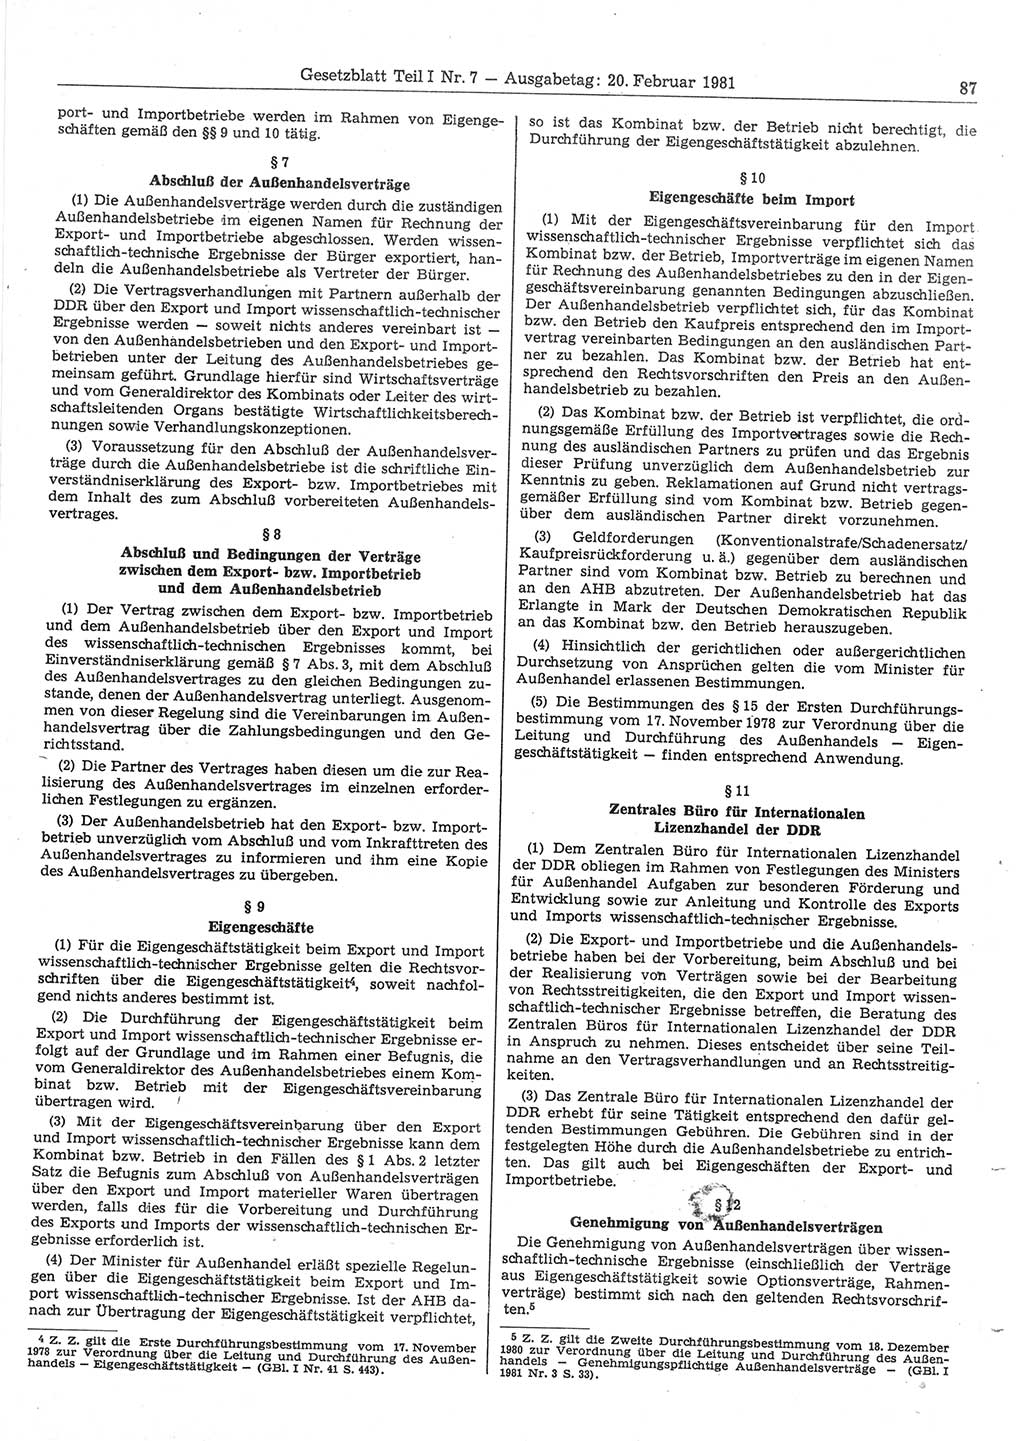 Gesetzblatt (GBl.) der Deutschen Demokratischen Republik (DDR) Teil Ⅰ 1981, Seite 87 (GBl. DDR Ⅰ 1981, S. 87)